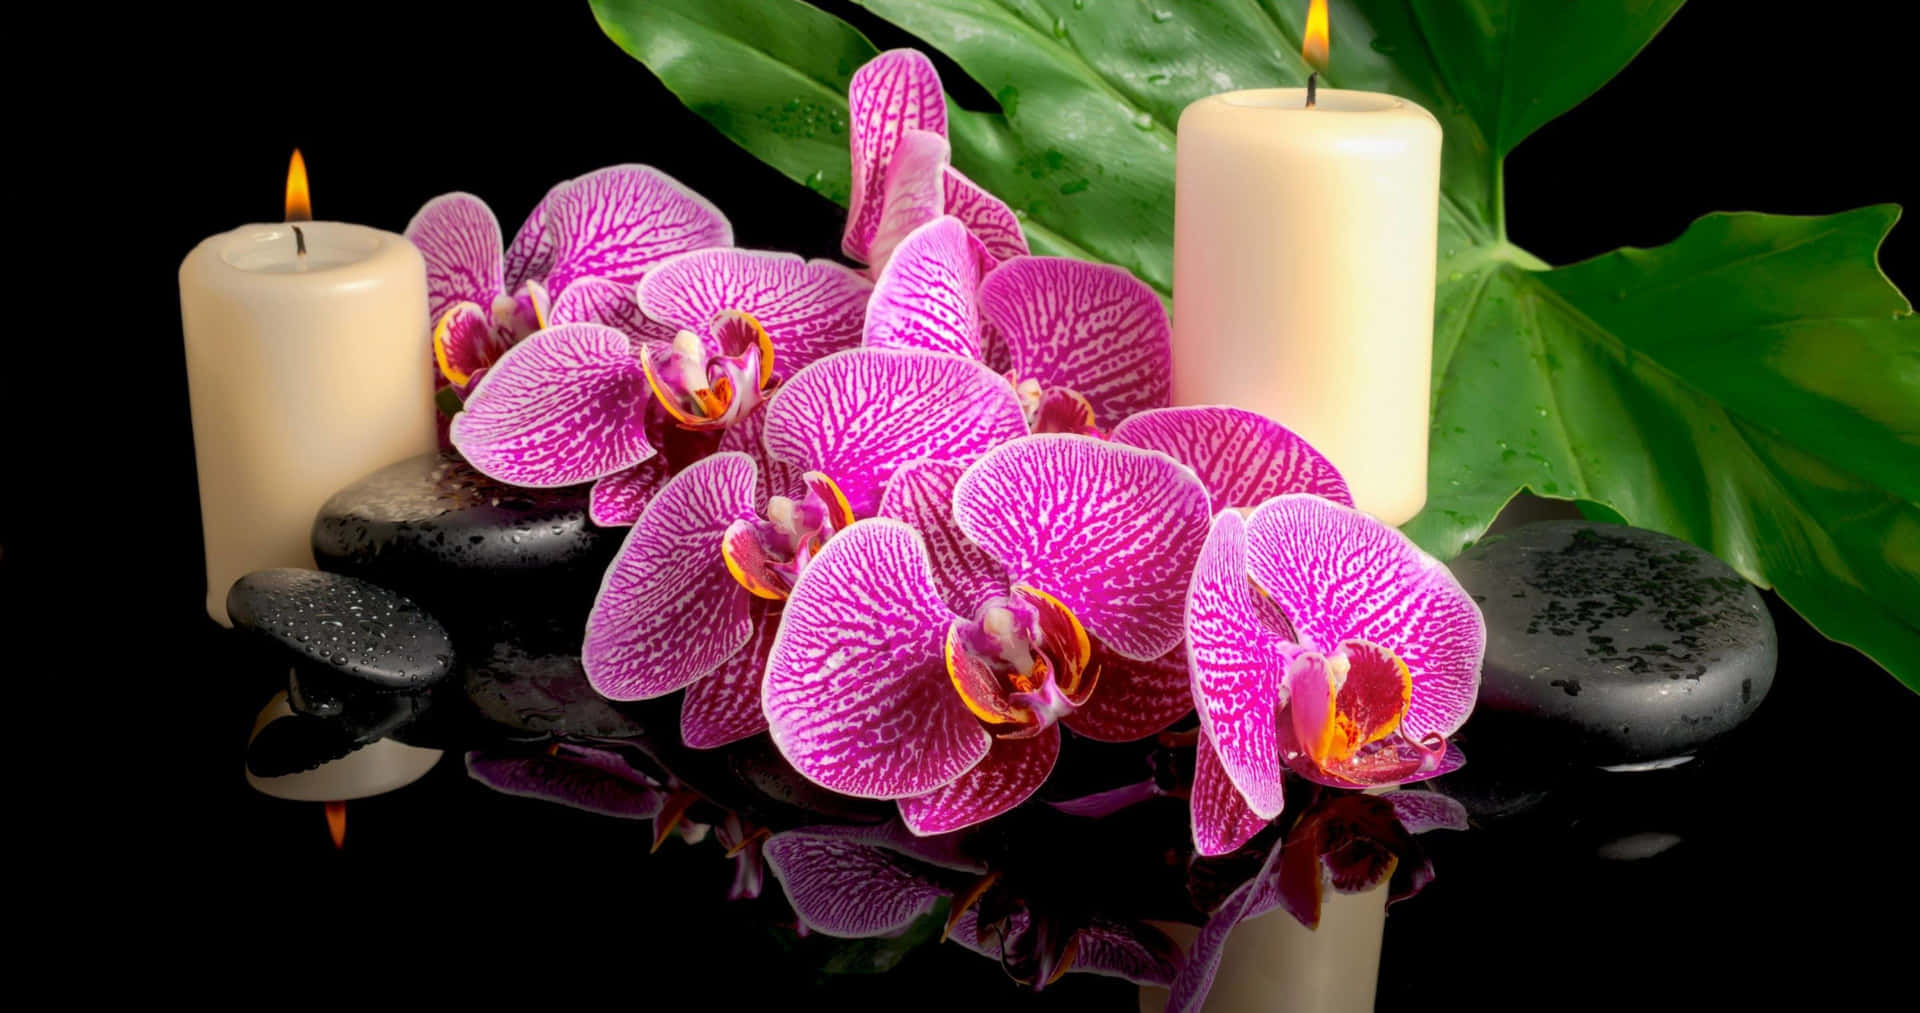 Eineprächtige Orchidee Blüht In Der Natur.